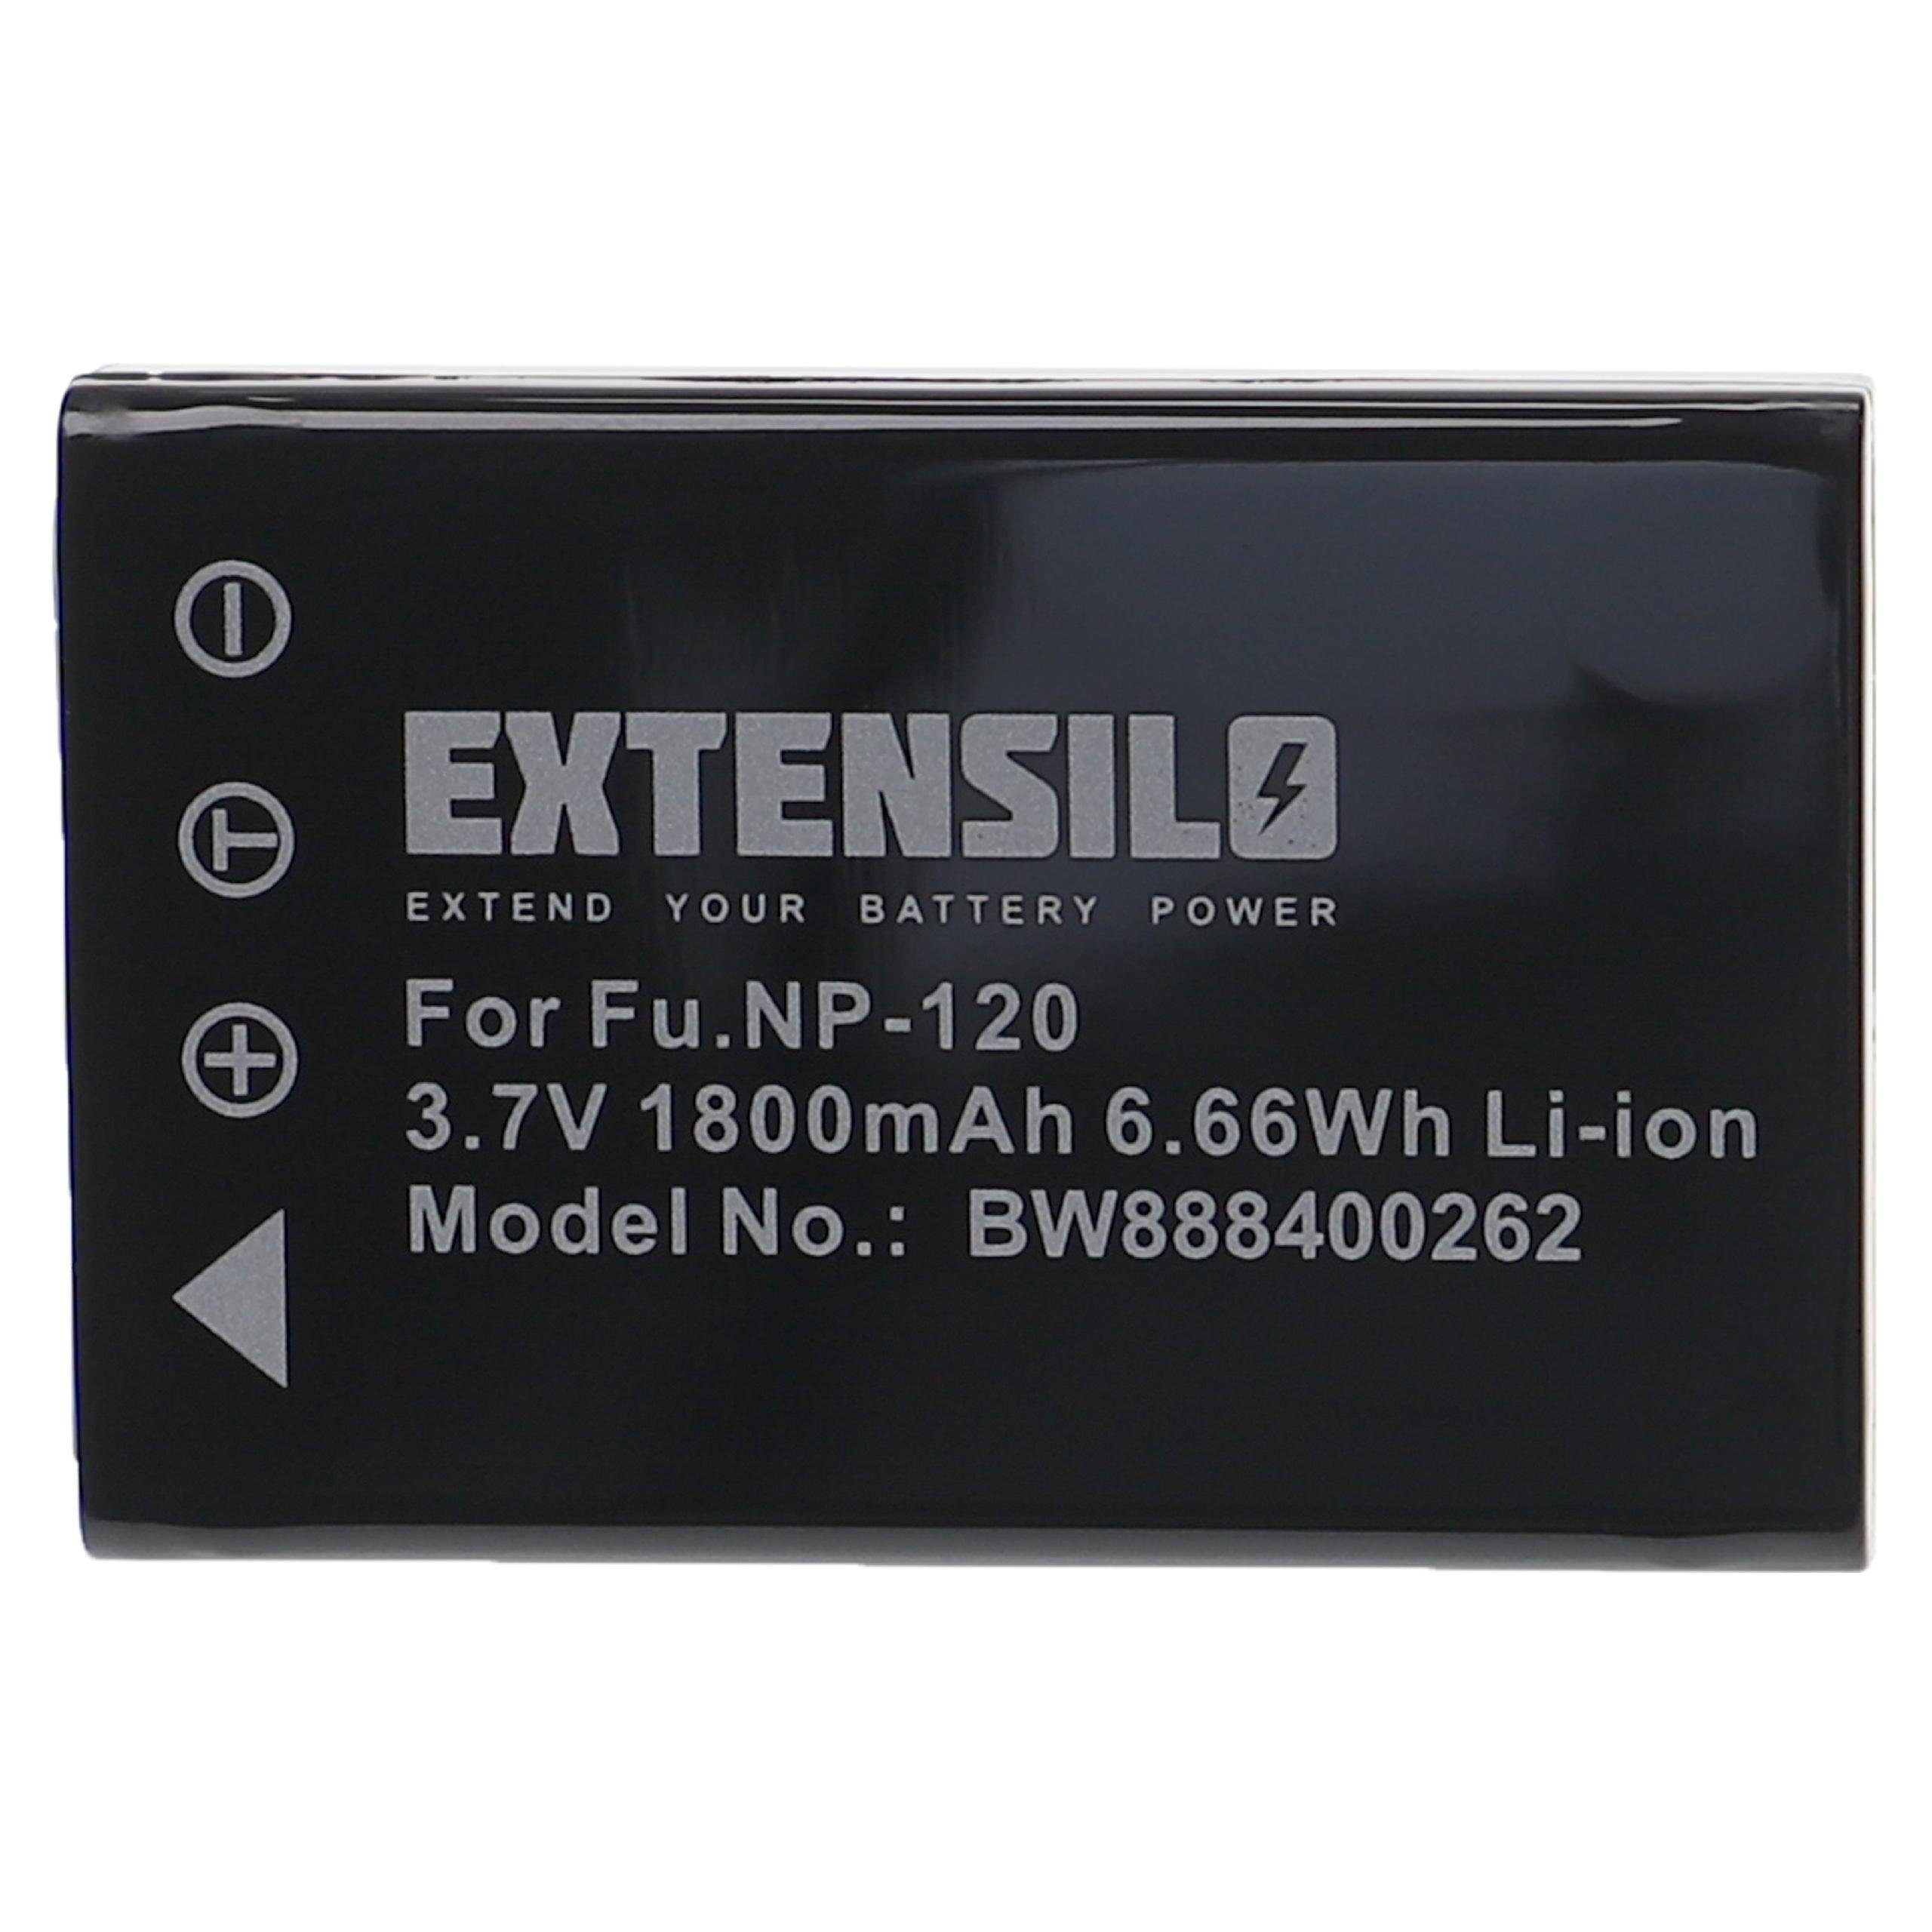 Extensilo kompatibel mit Pentax Optio 550, 750Z, 750, MX4, 450, MX, 555 Kamera-Akku Li-Ion 1800 mAh (3,7 V)